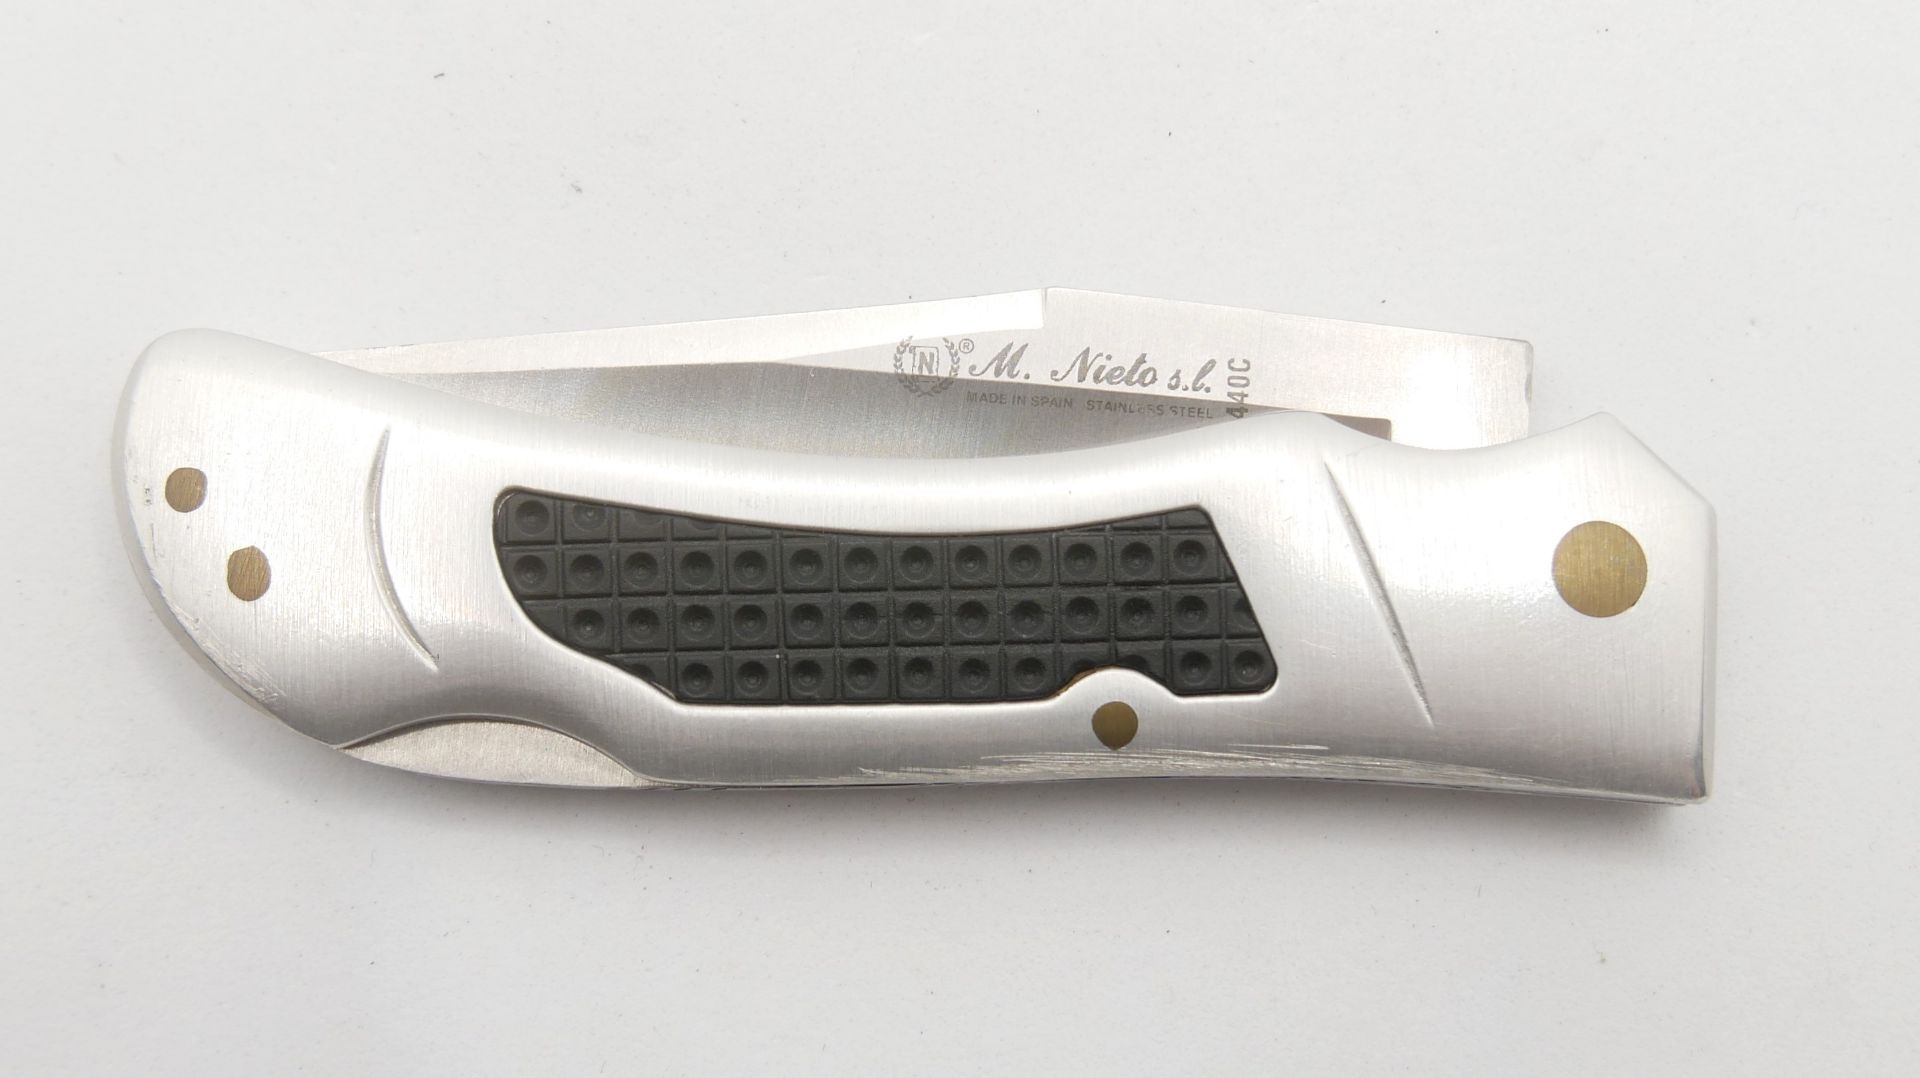 Outdoor Taschenmesser M.Nieto 440 C. Top Messer, sehr guter Zustand - Image 2 of 2